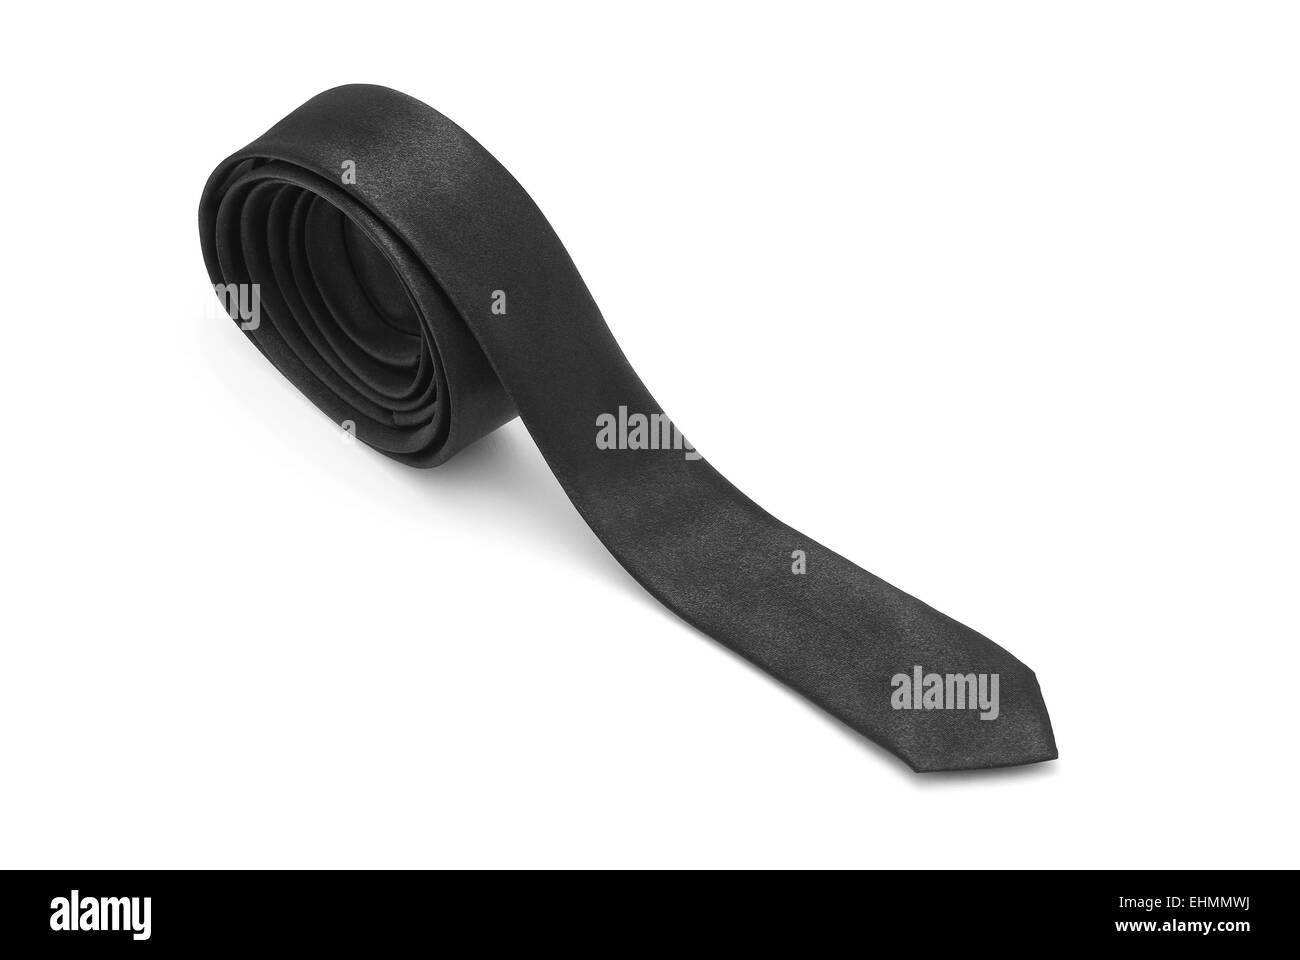 black tie on white background Stock Photo